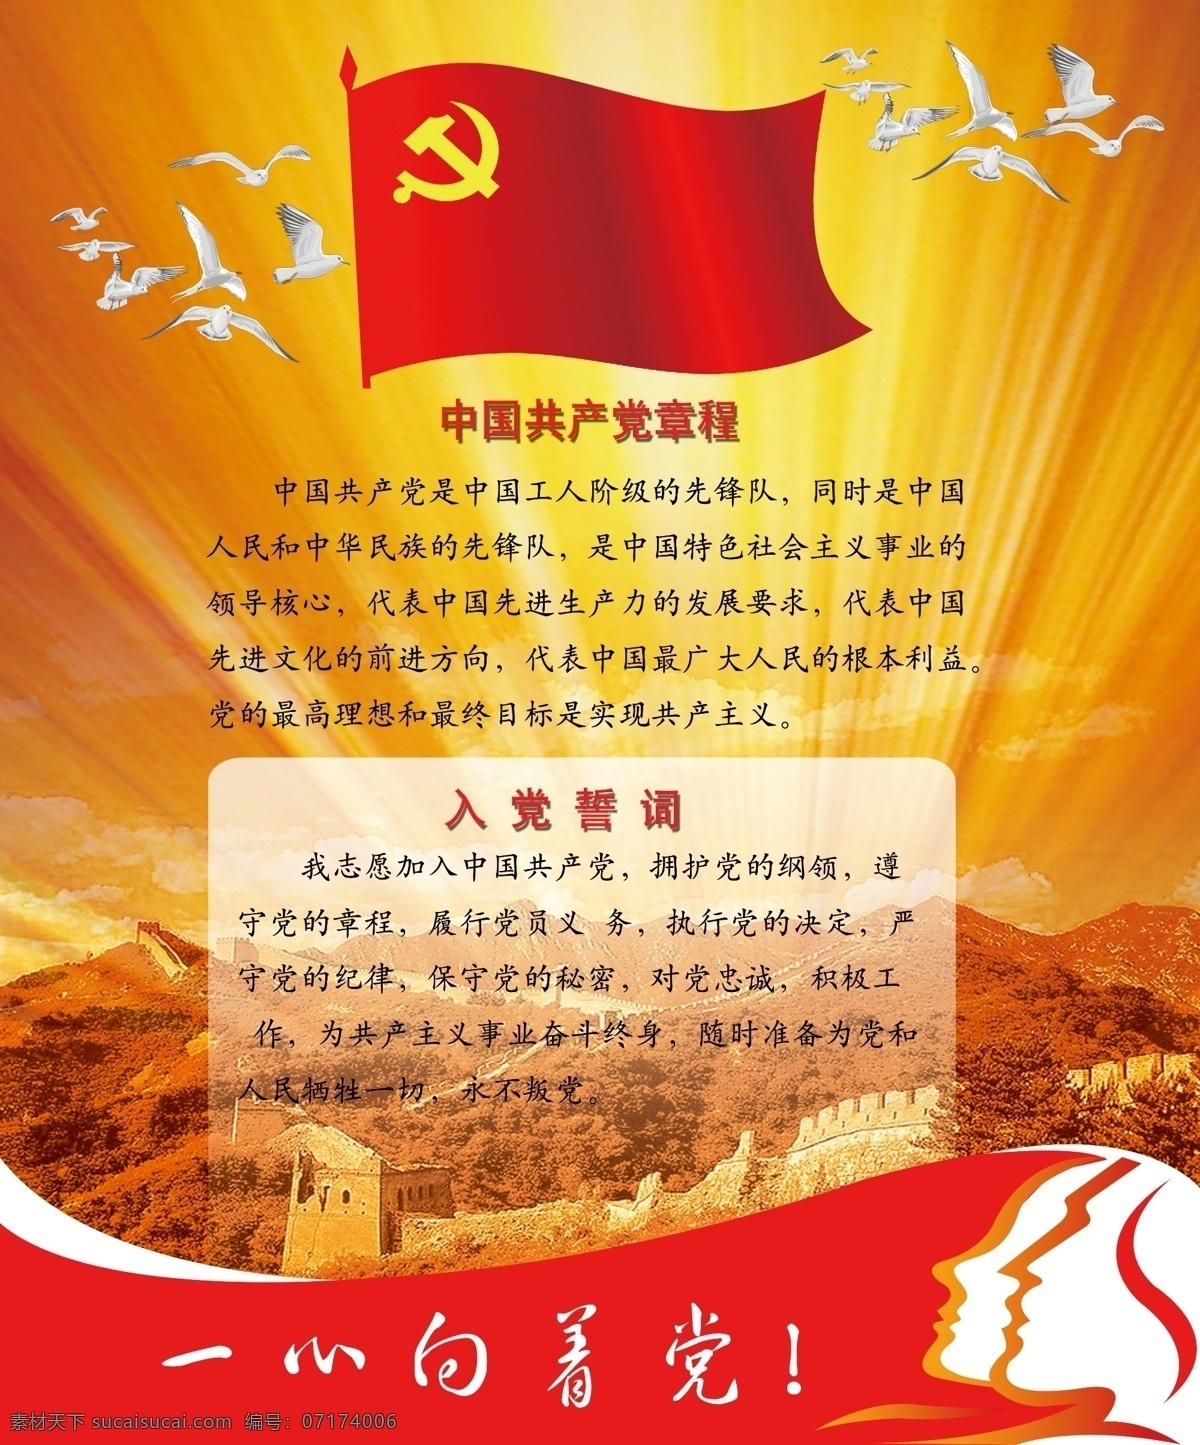 中国共产党 章程 总纲 入党 誓词 白鸽 党旗 长城 炫光 人头 广告设计模板 其他模版 源文件